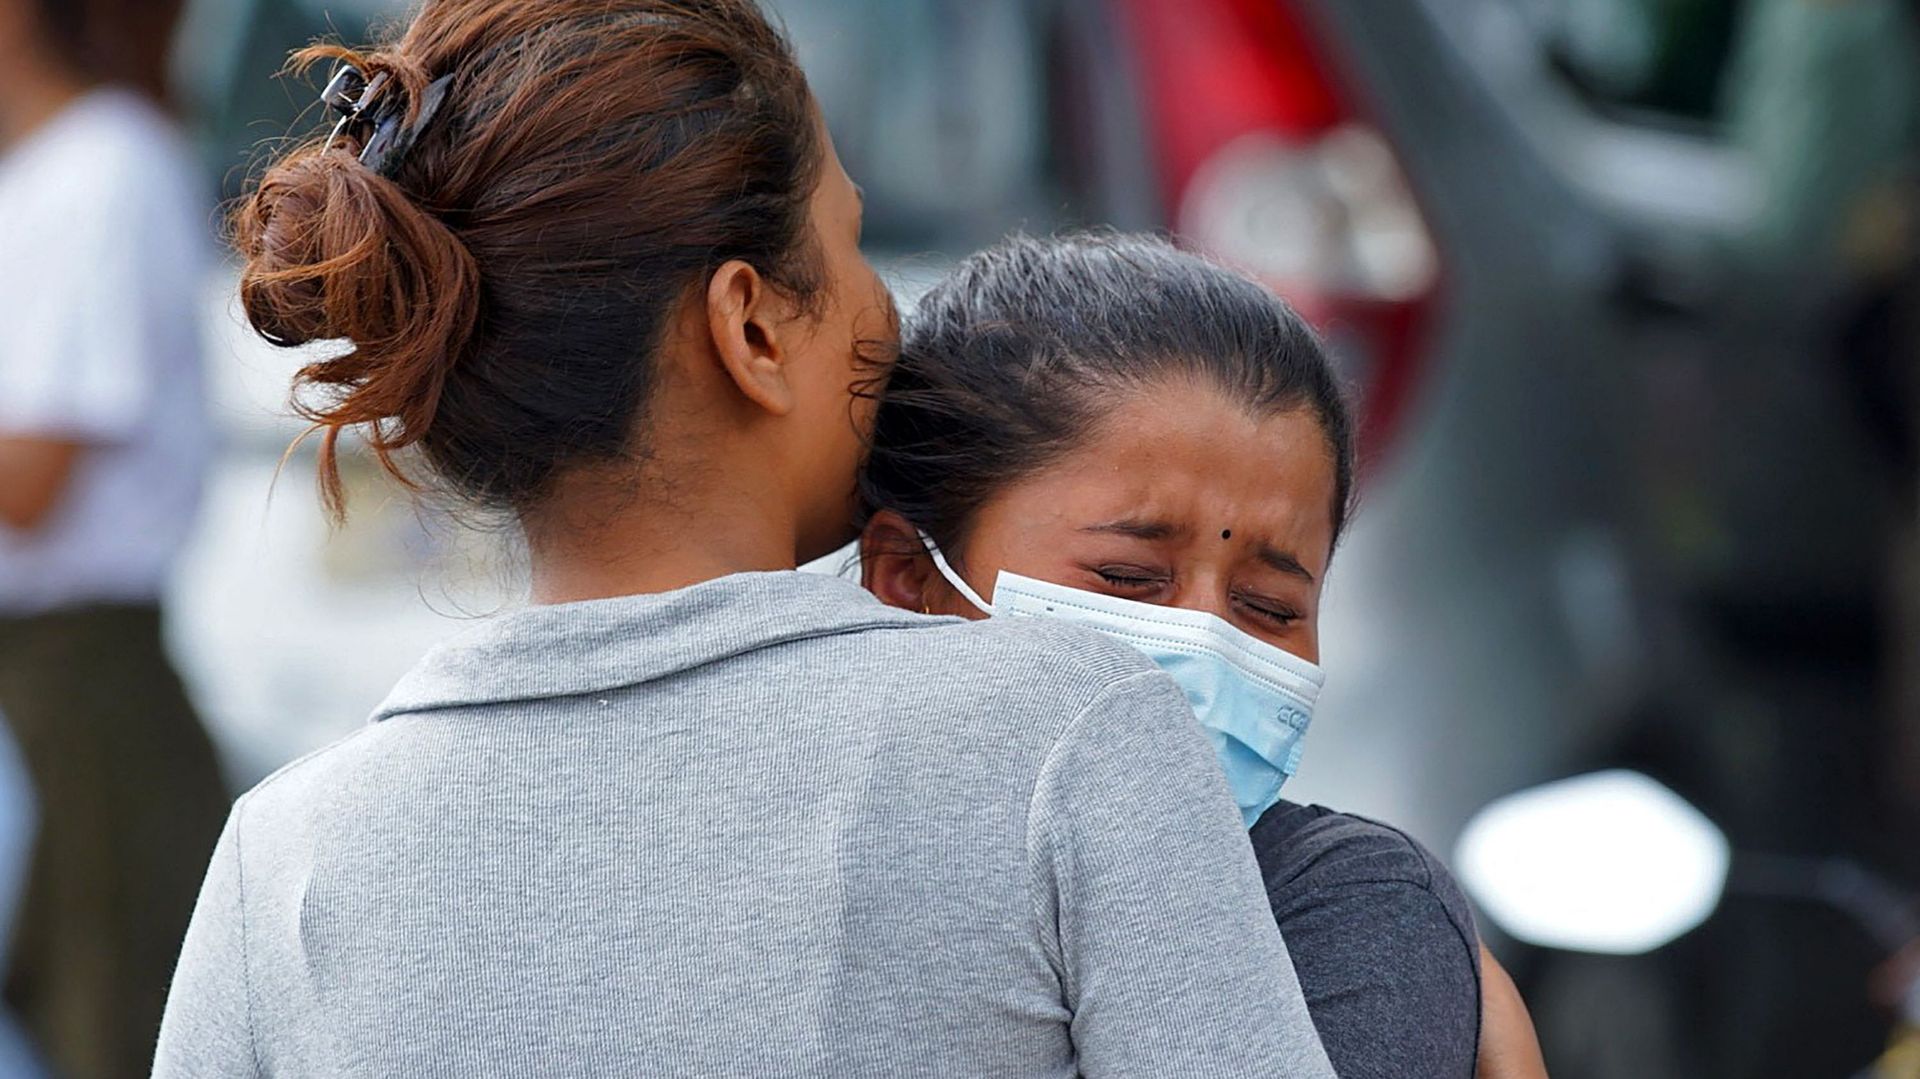 Des membres des familles et des proches des passagers à bord de l'avion Twin Otter exploité par Tara Air, pleurent devant l'aéroport de Pokhara, le 29 mai 2022. - Un avion de passagers avec 22 personnes à bord a été porté disparu au Népal le 29 mai, ont d